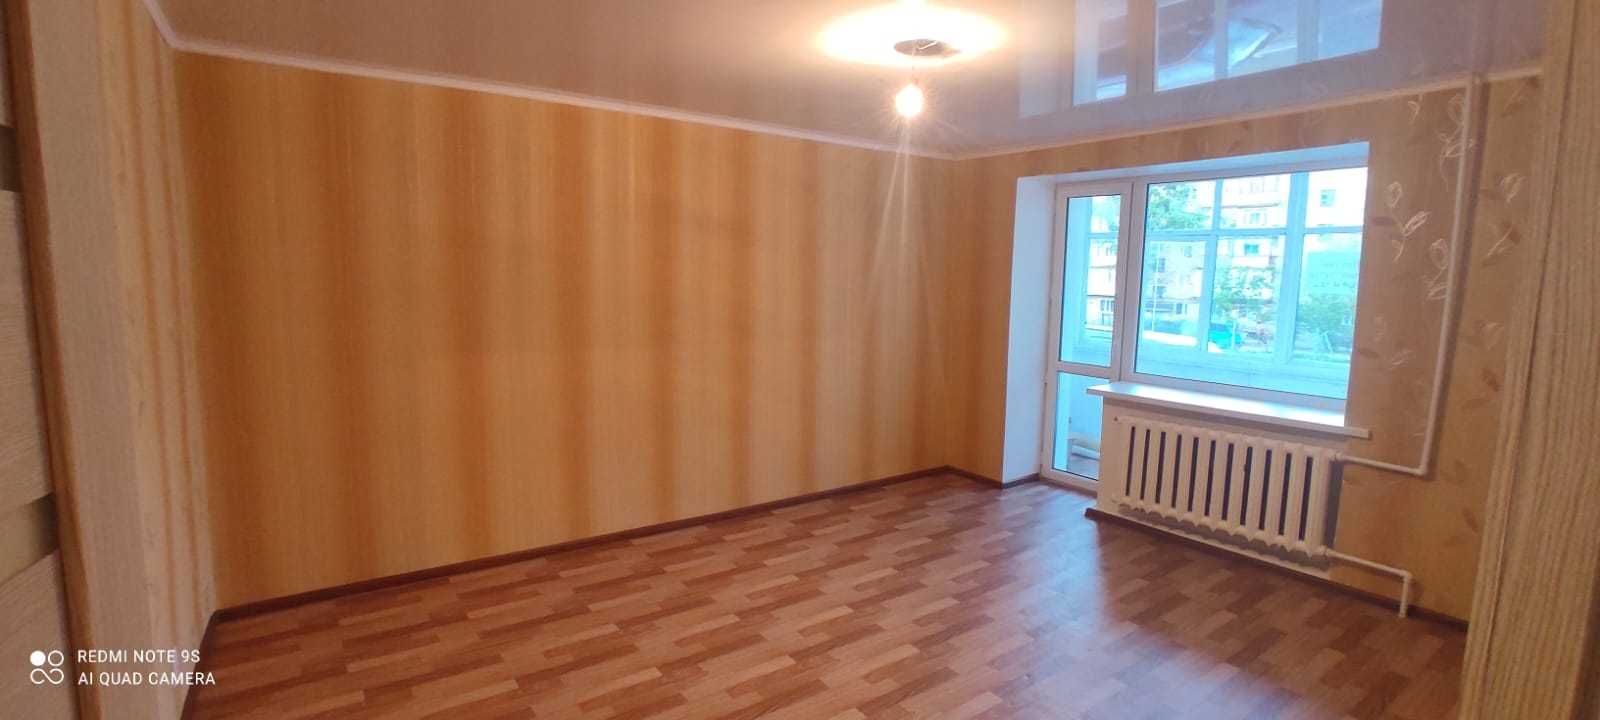 Продам очень большую 1 комнатную квартиру в Сортировке